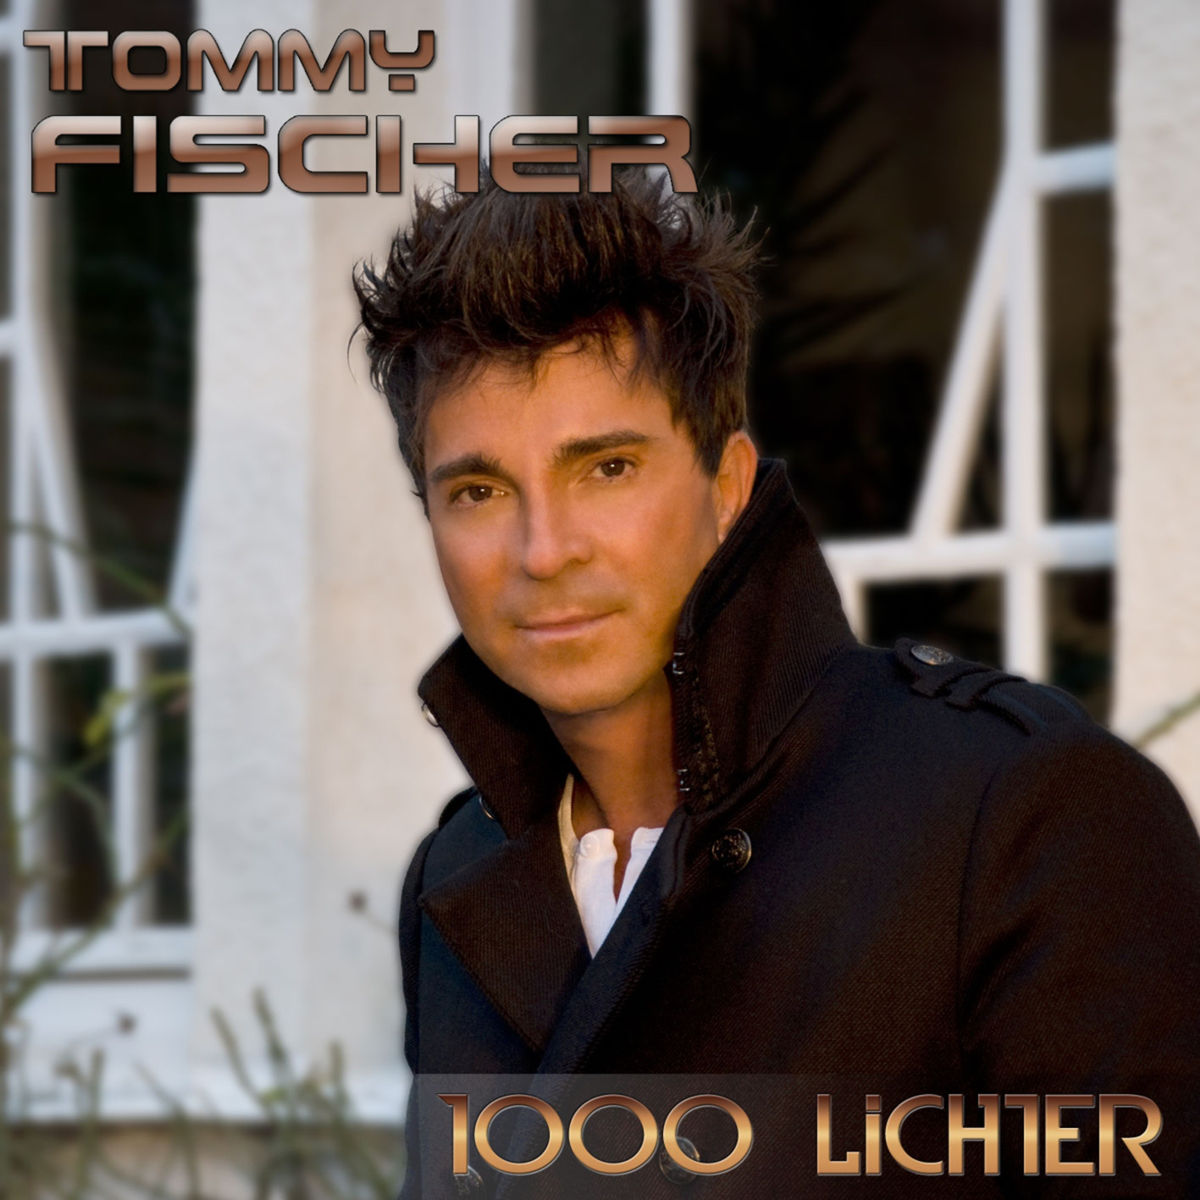 Tommy Fischer 1000 Lichter Austriancharts At